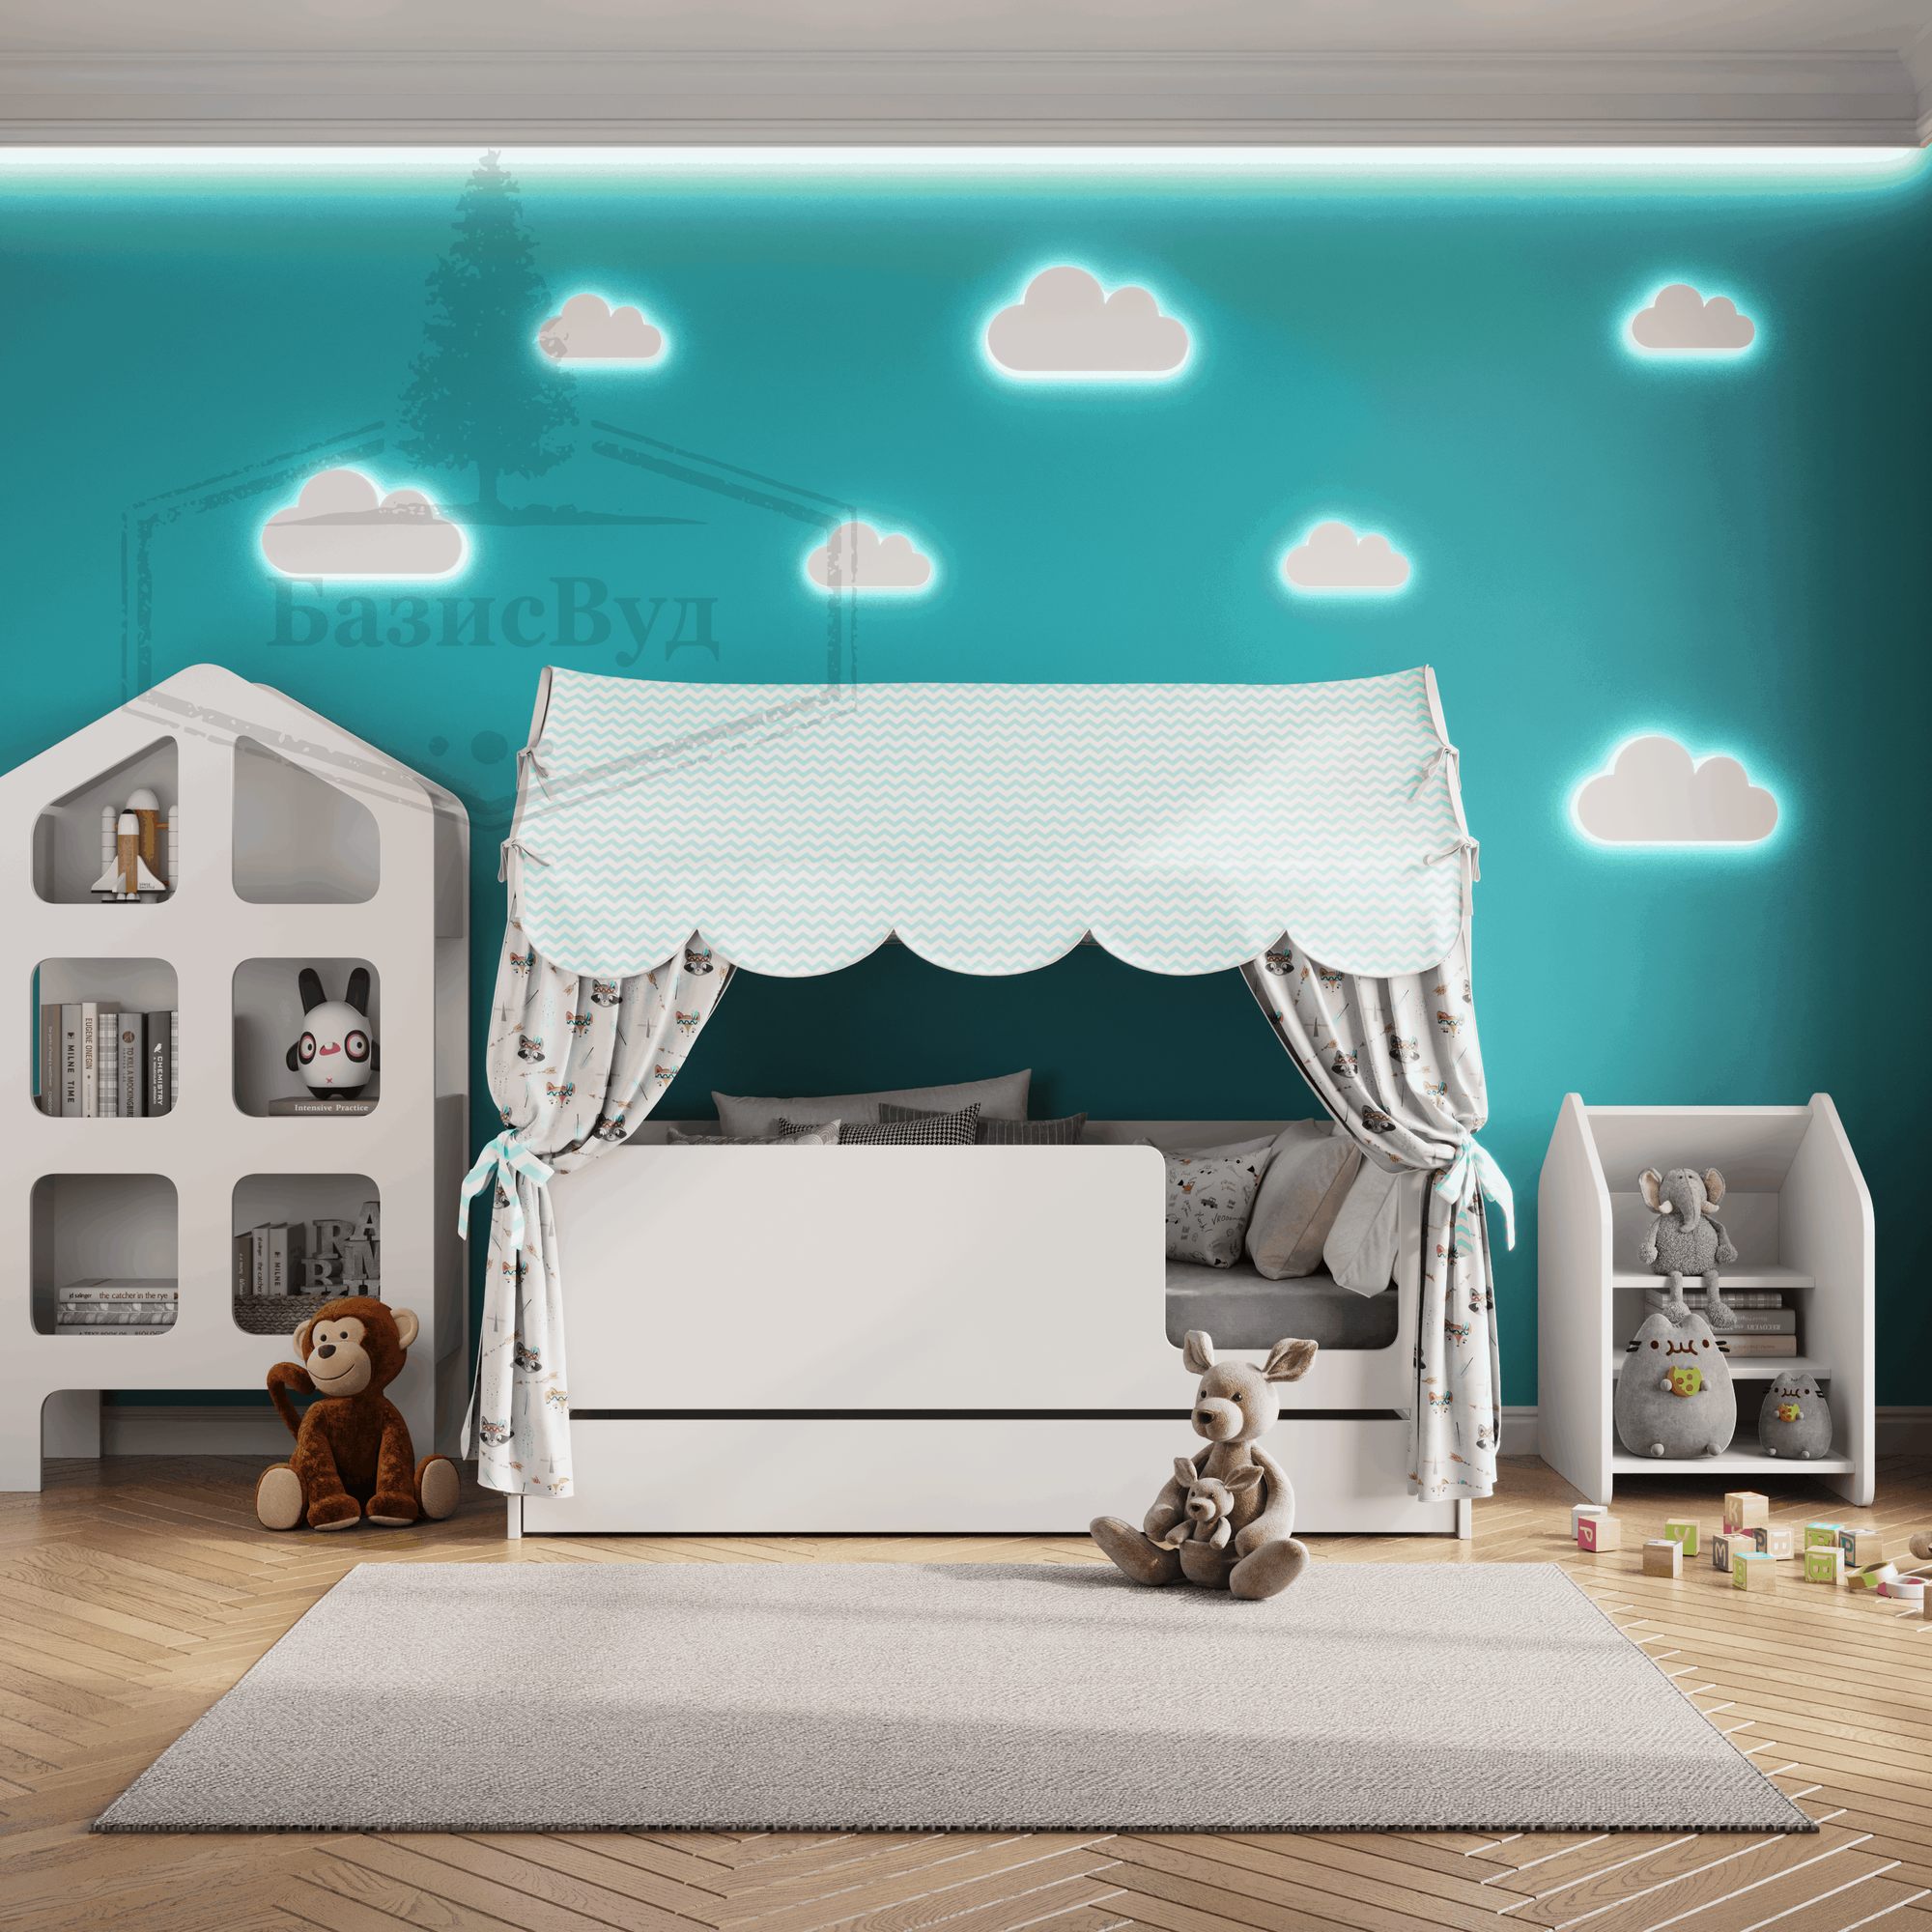 Кровать детская домик с текстилем и ящиком (светлый, со зверятами, вход справа) "Базовый"